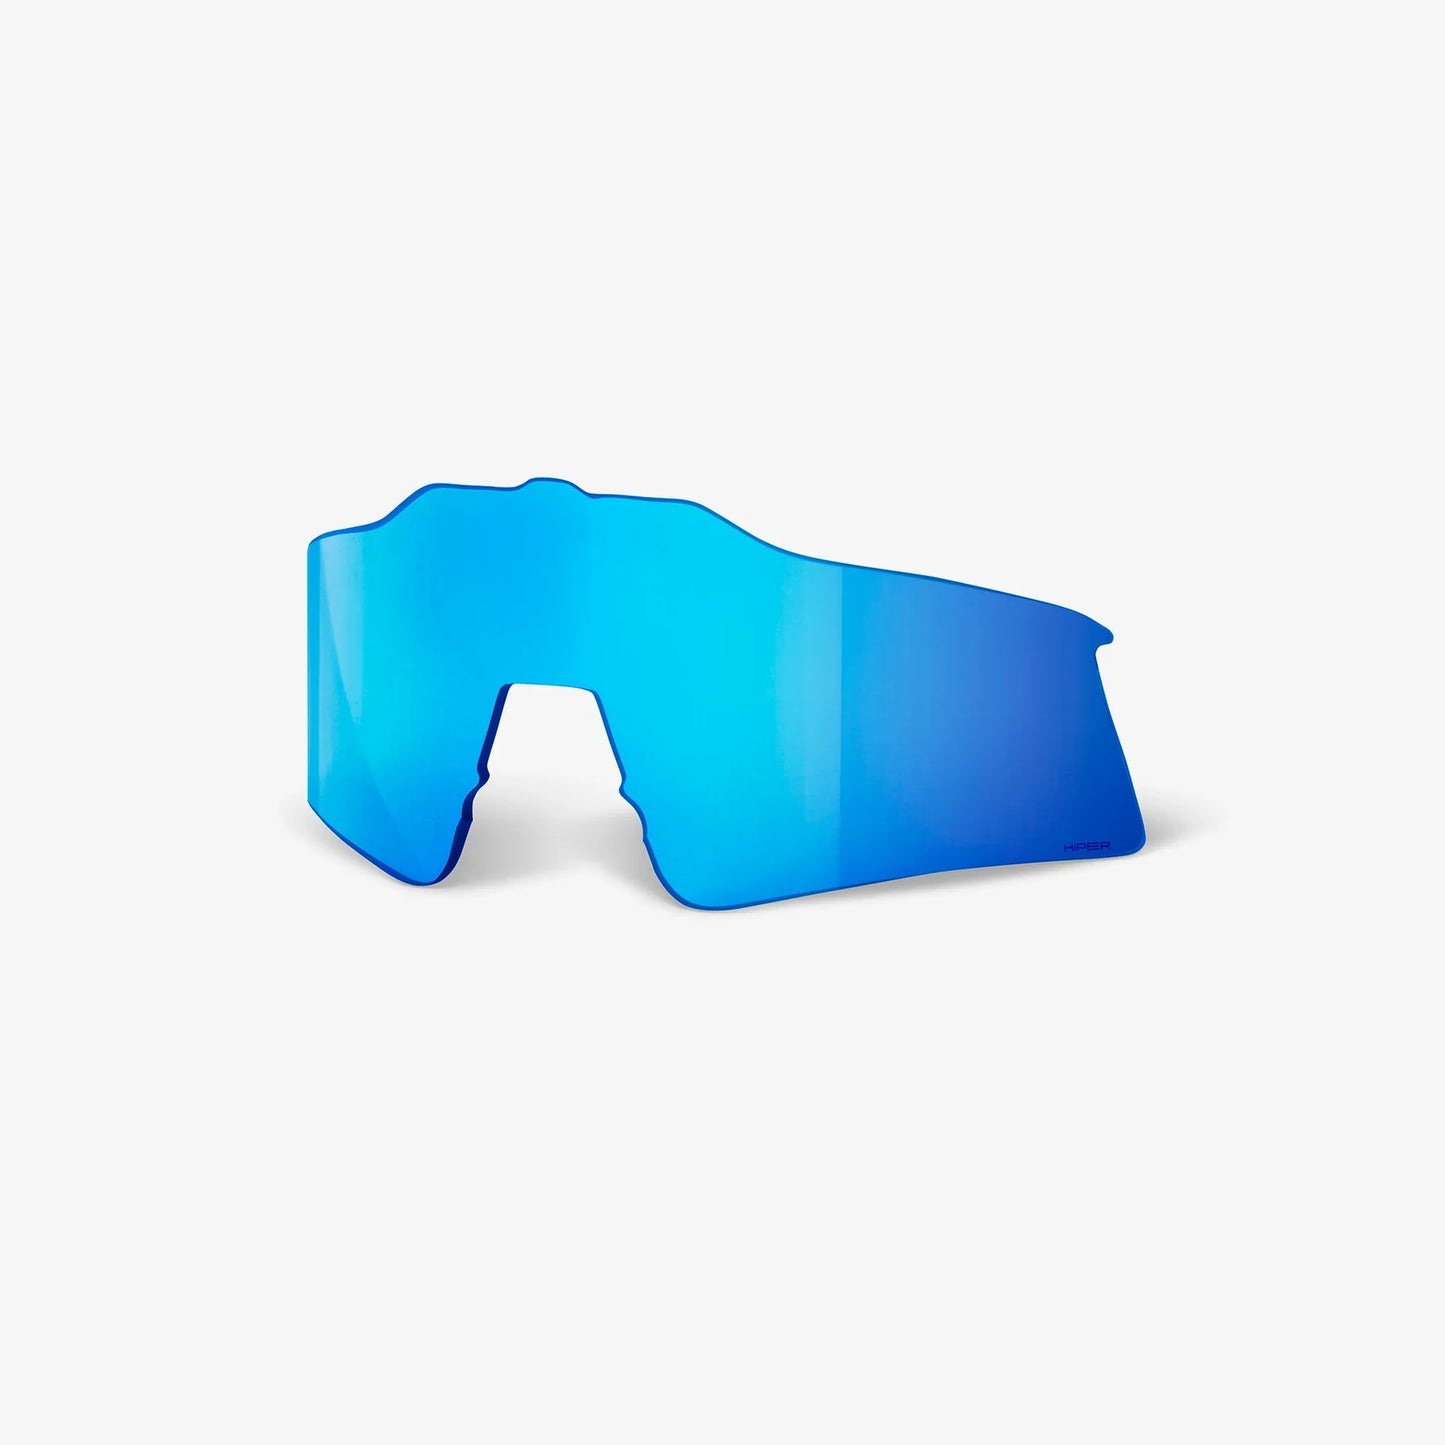 100% - SPEEDCRAFT SL Matte White/Metallic Blue - HiPER Blue Multilayer Mirror Lens